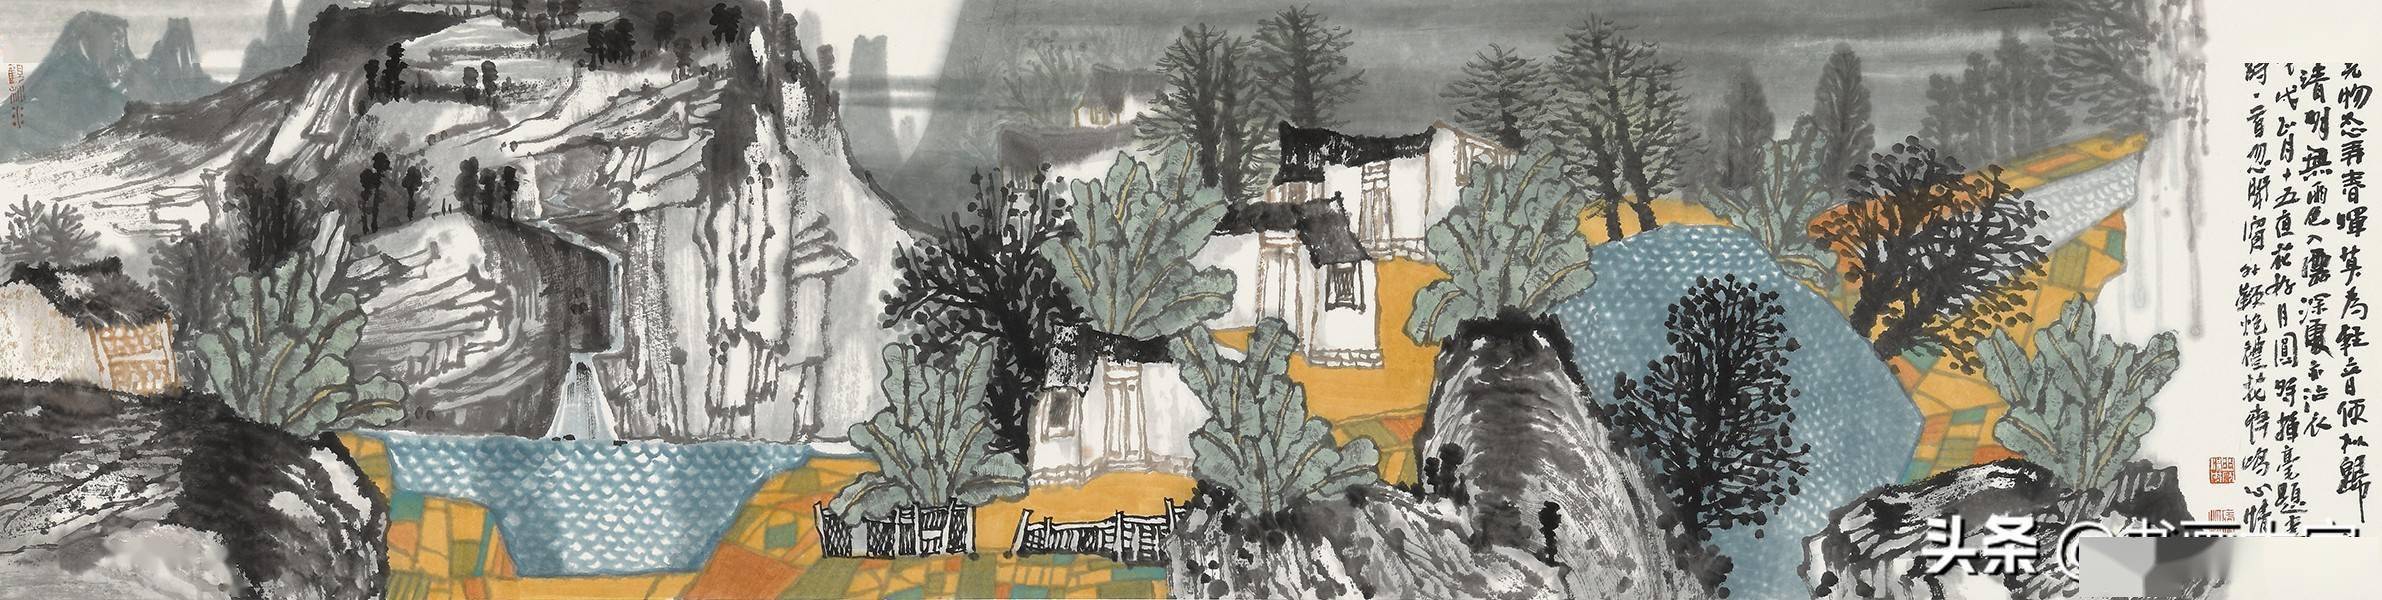 绘如意:"心外无法"中国画名家展,任鸣,满威山水画作品